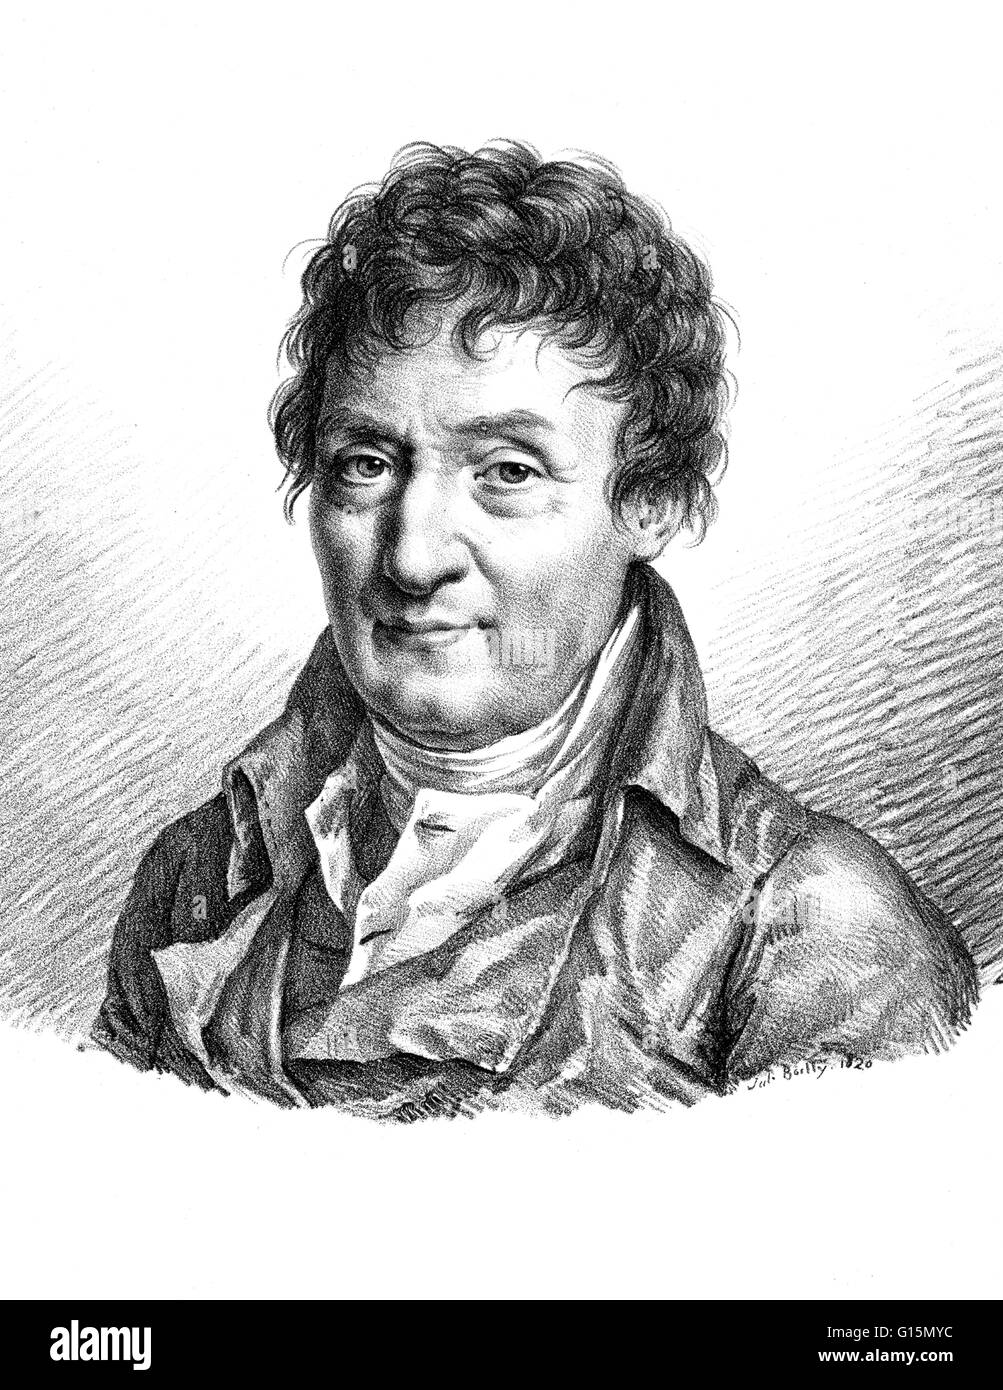 Jacques Alexandre César Charles (12 novembre 1746 - 7 Avril, 1823) était un inventeur français, scientifique, mathématicien, et balloonist. Charles a eu l'idée que l'hydrogène serait un agent de levage adapté pour les bulles après avoir étudié le travail de Robert Banque D'Images